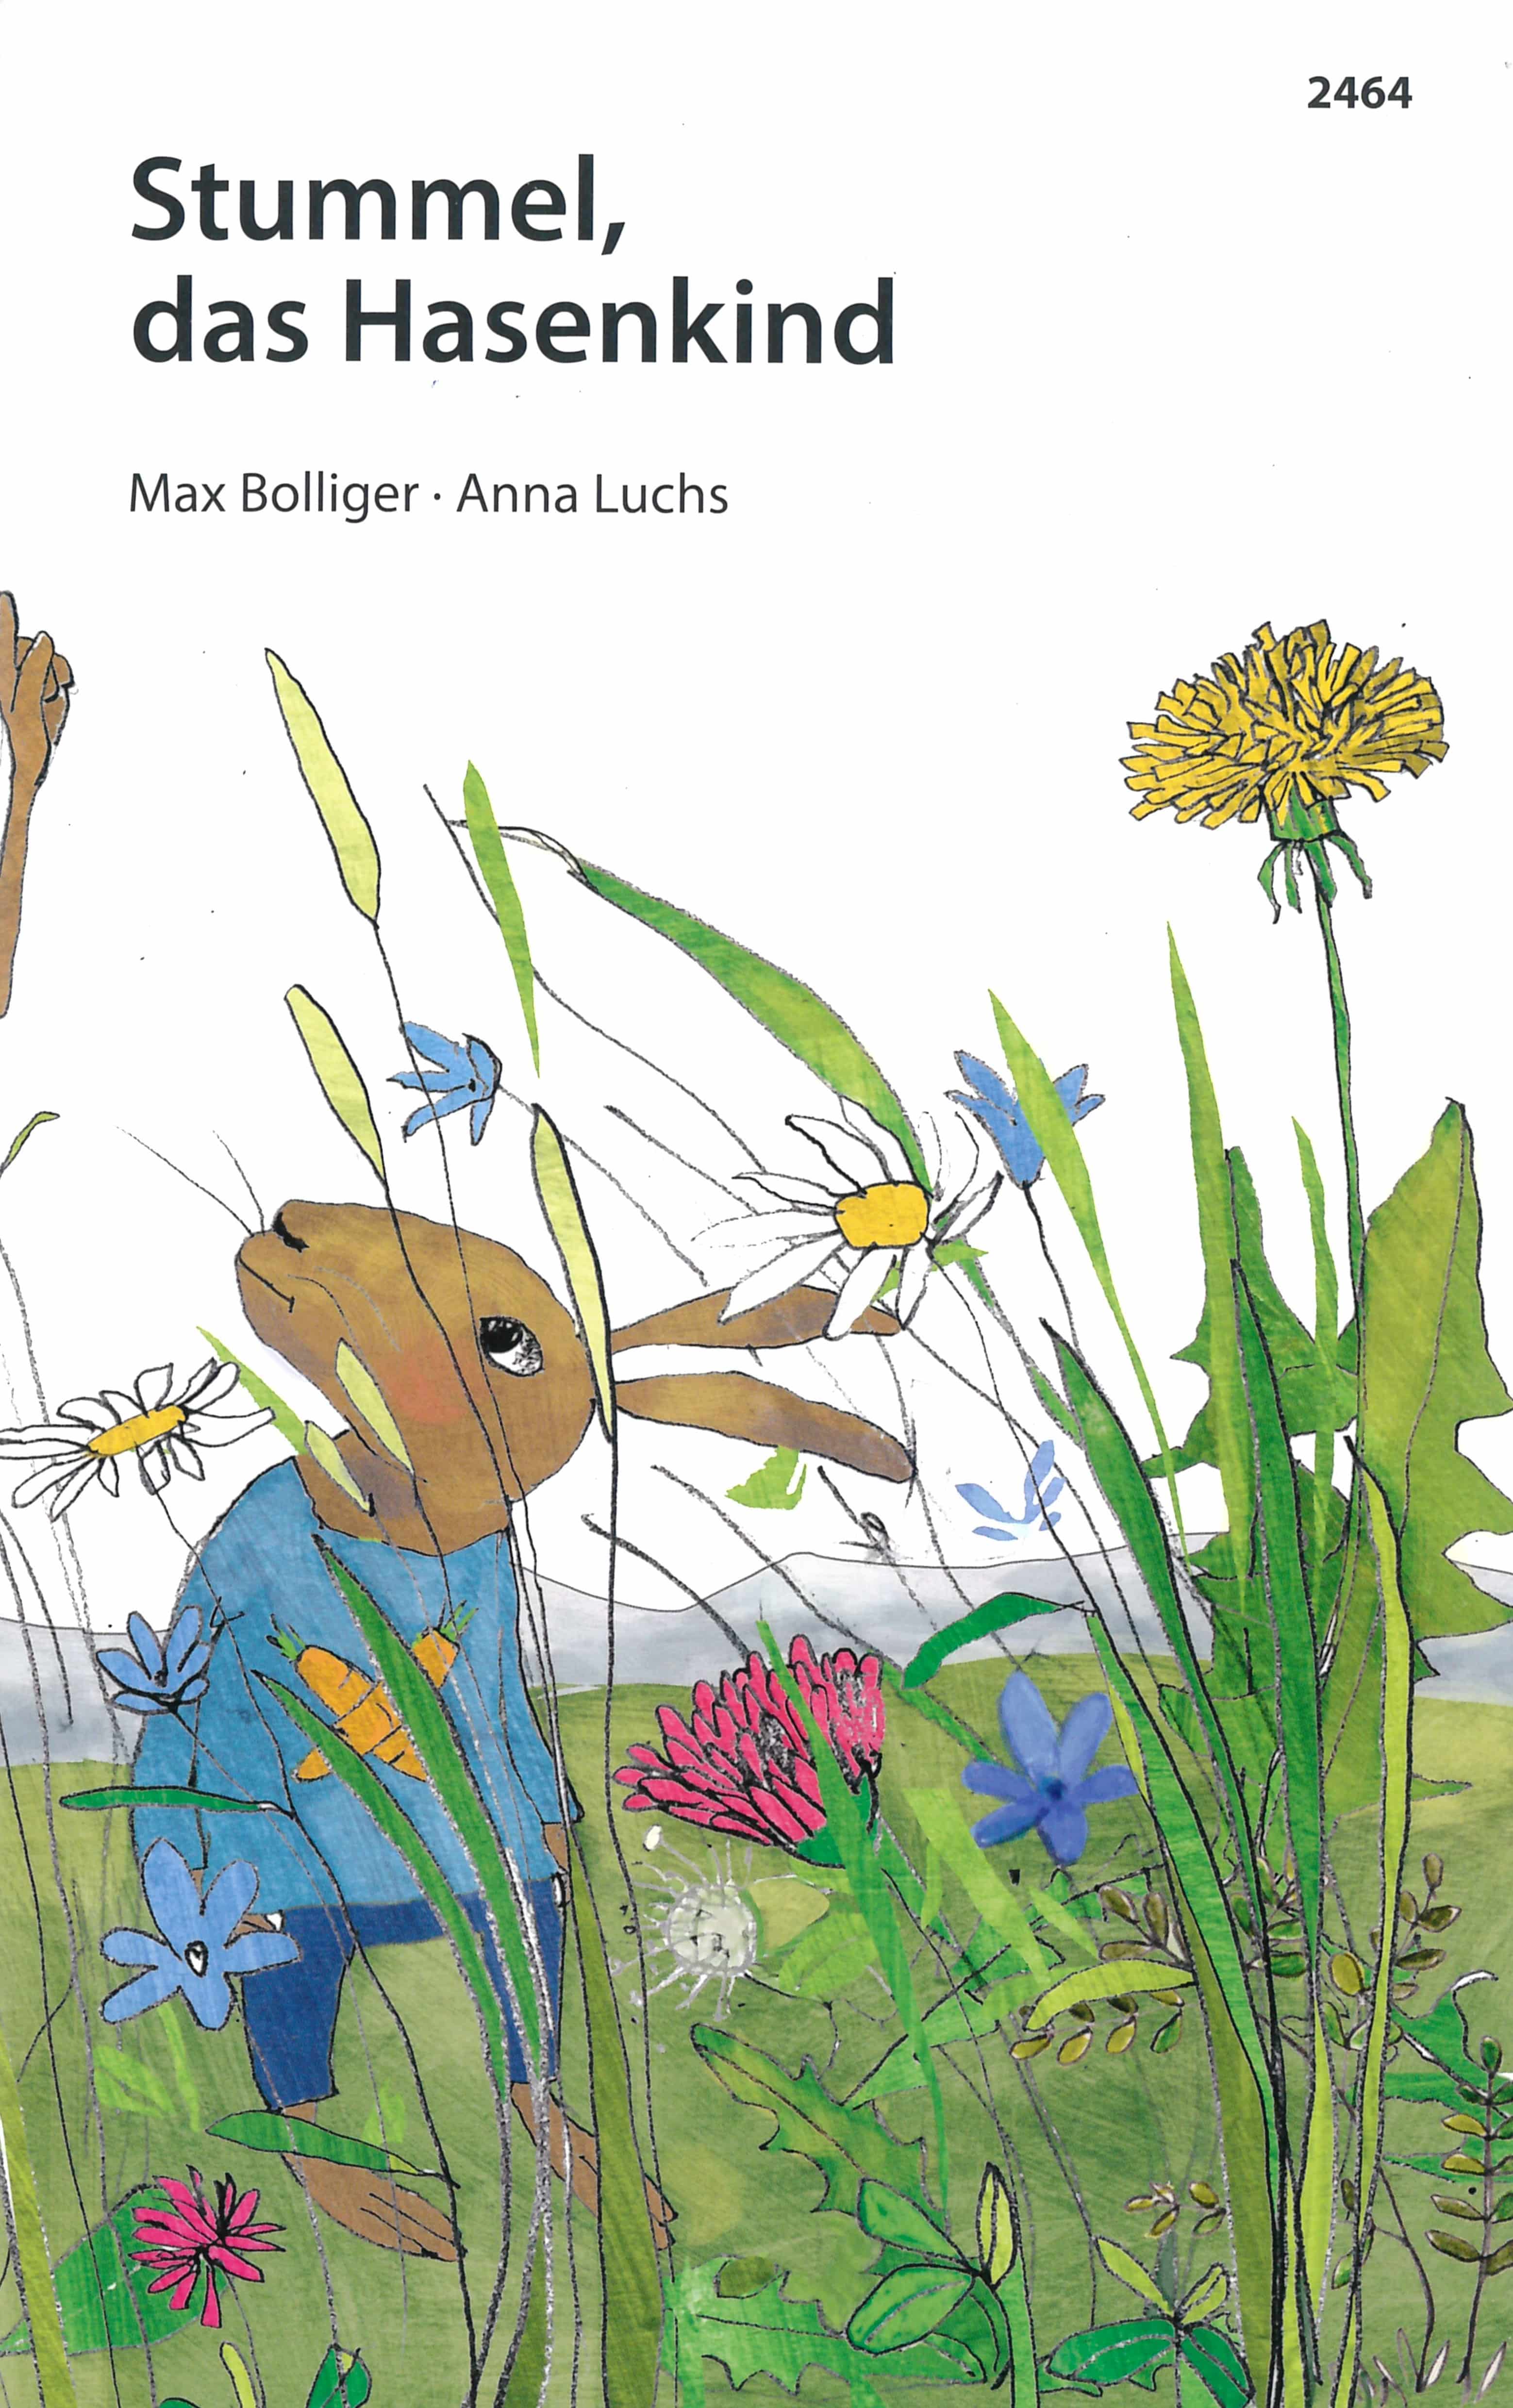 Stummel, das Hasenkind, ein Kinderbuch von Max Bolliger, Illustration von Anna Luchs, SJW Verlag, Kinderbuchklassiker